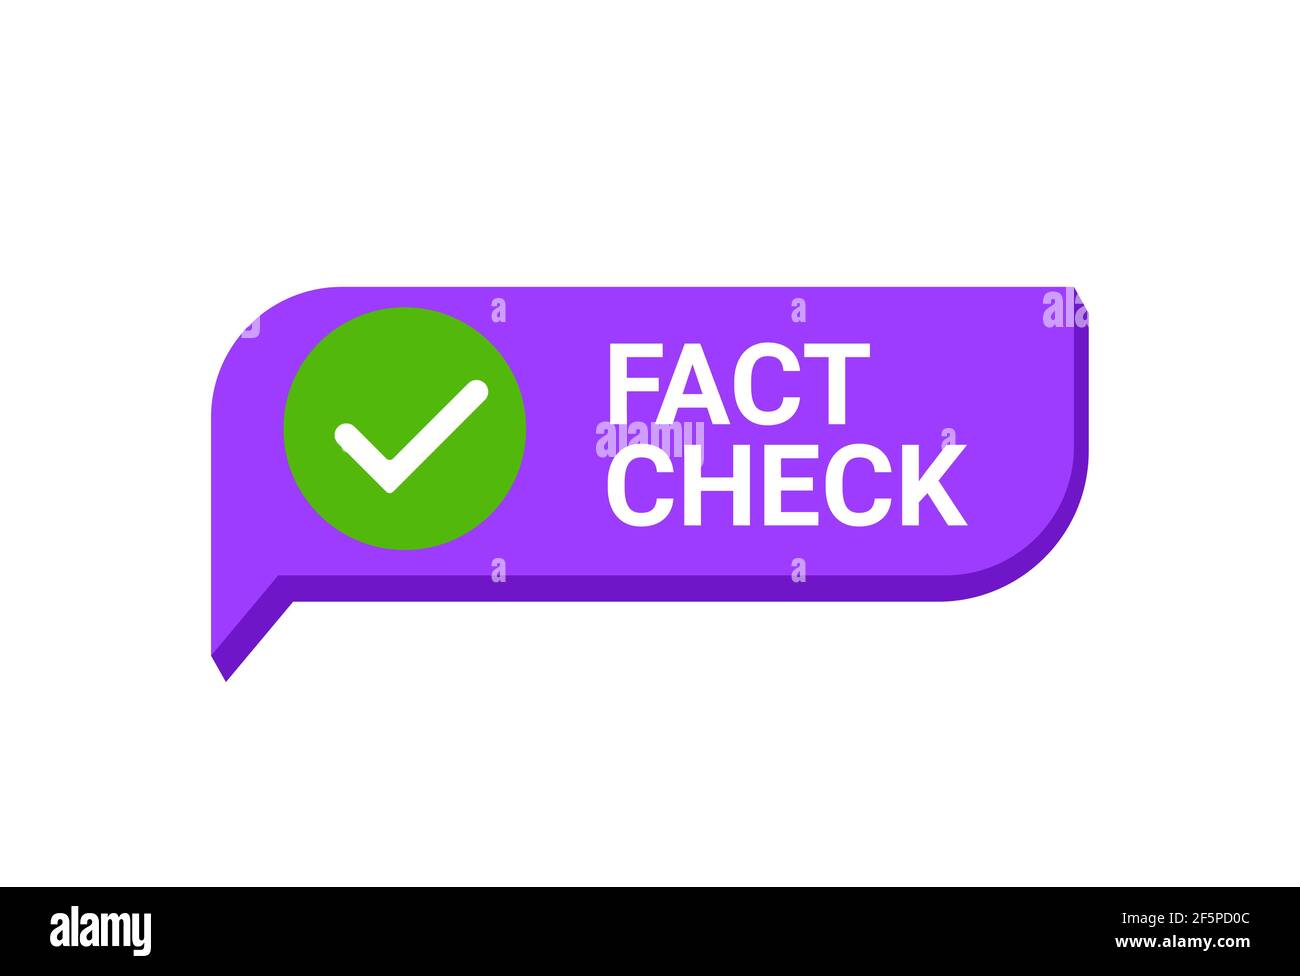 Fact check myth vs truth. True fact check vector icon concept Stock Vector